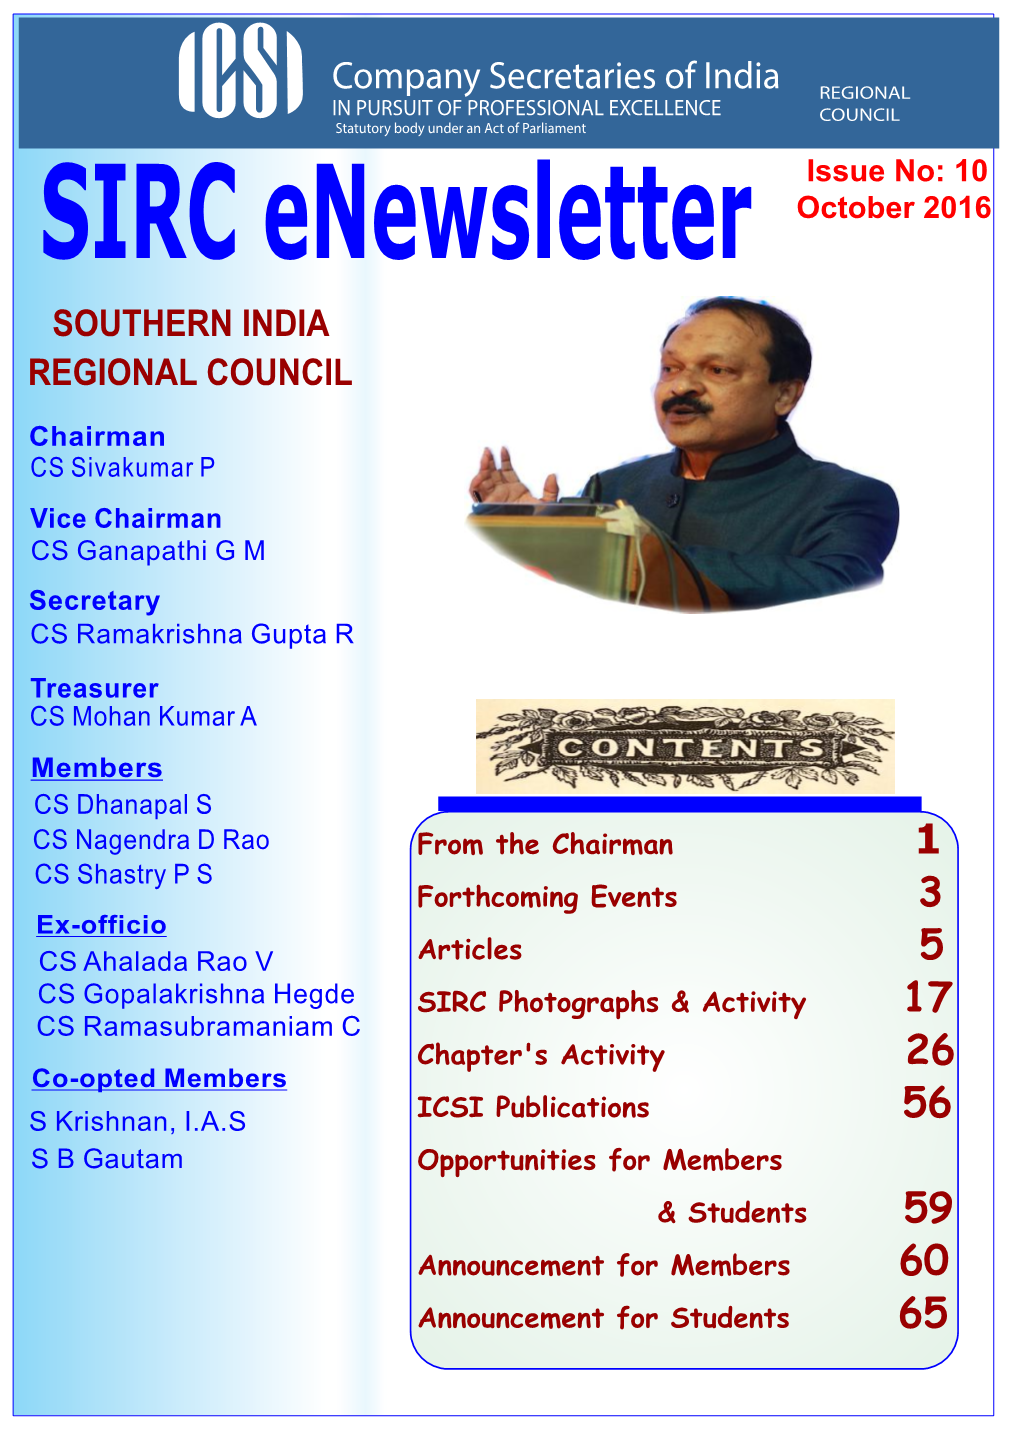 SIRC Enewsletter Issue No